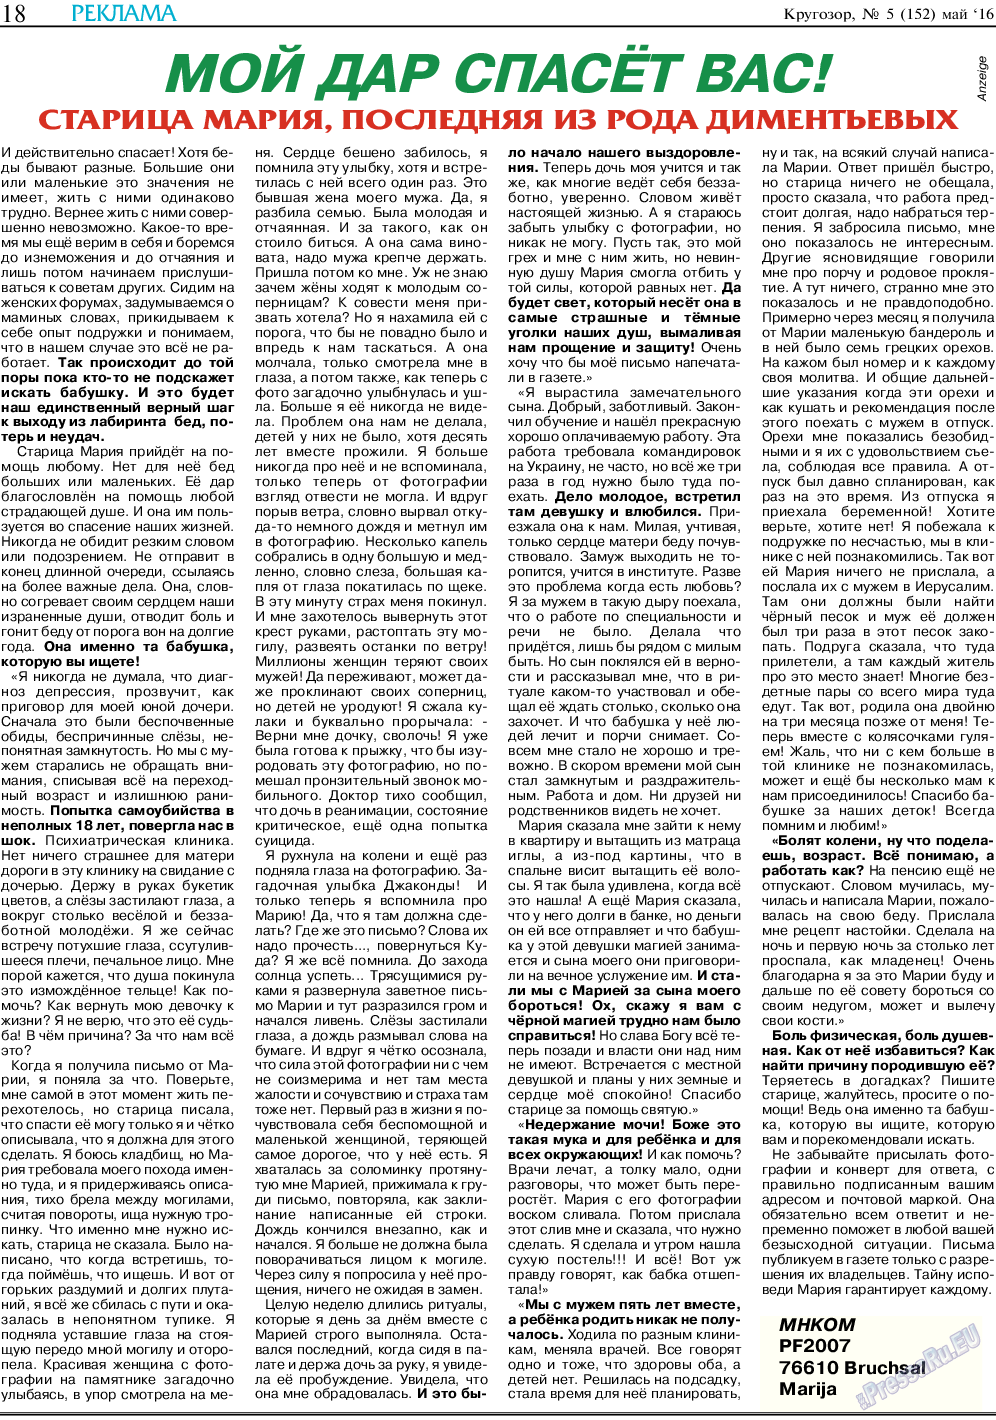 Кругозор, газета. 2016 №5 стр.18